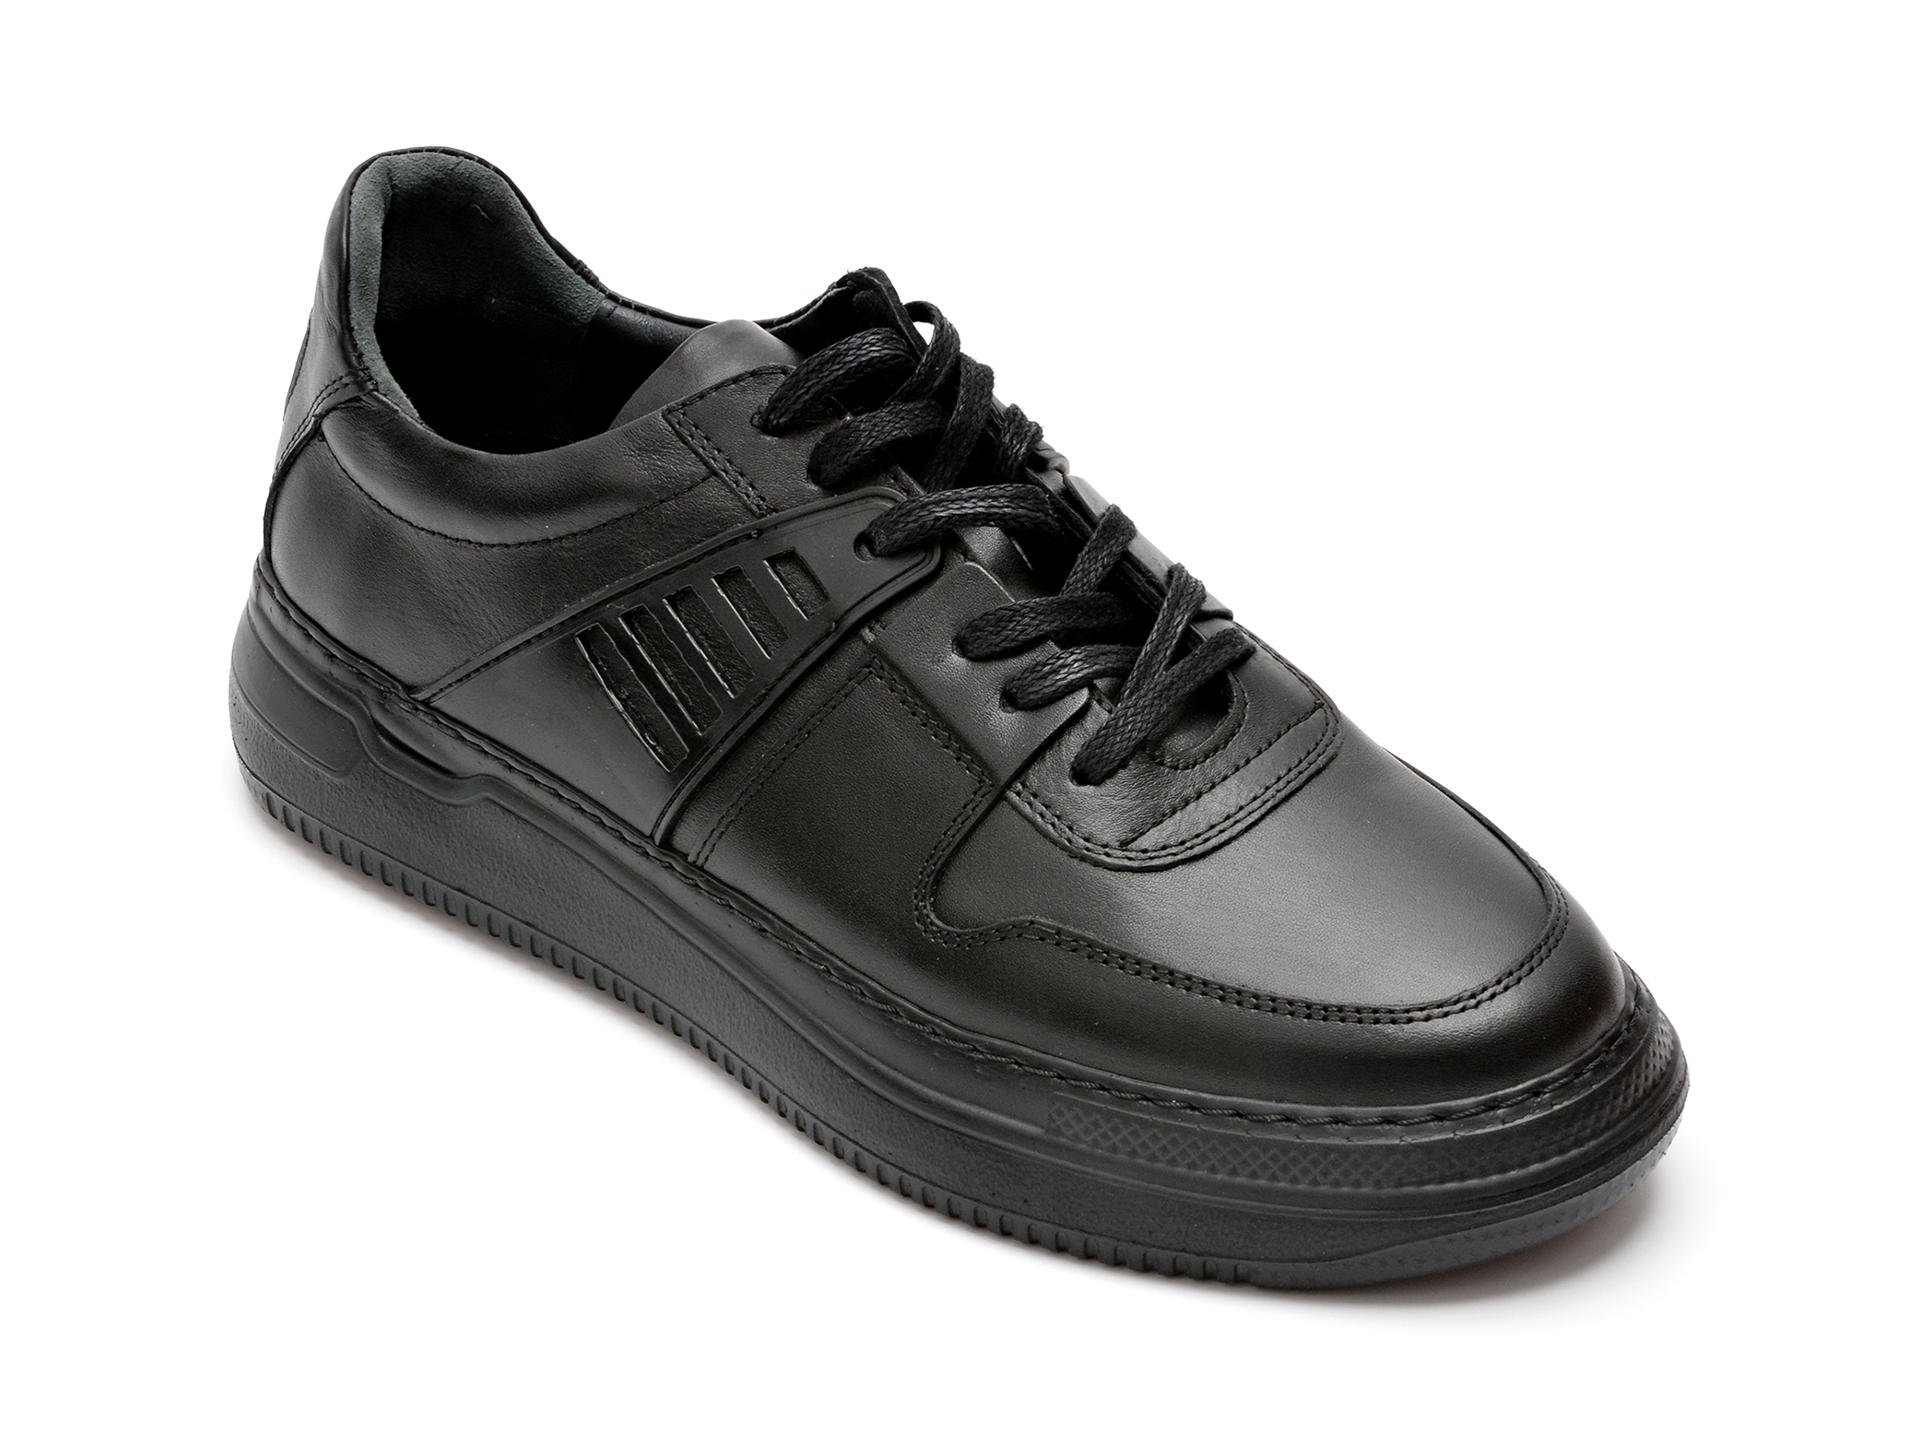 Pantofi OTTER negri, 13103, din piele naturala 2022 ❤️ Pret Super Black Friday otter.ro imagine noua 2022